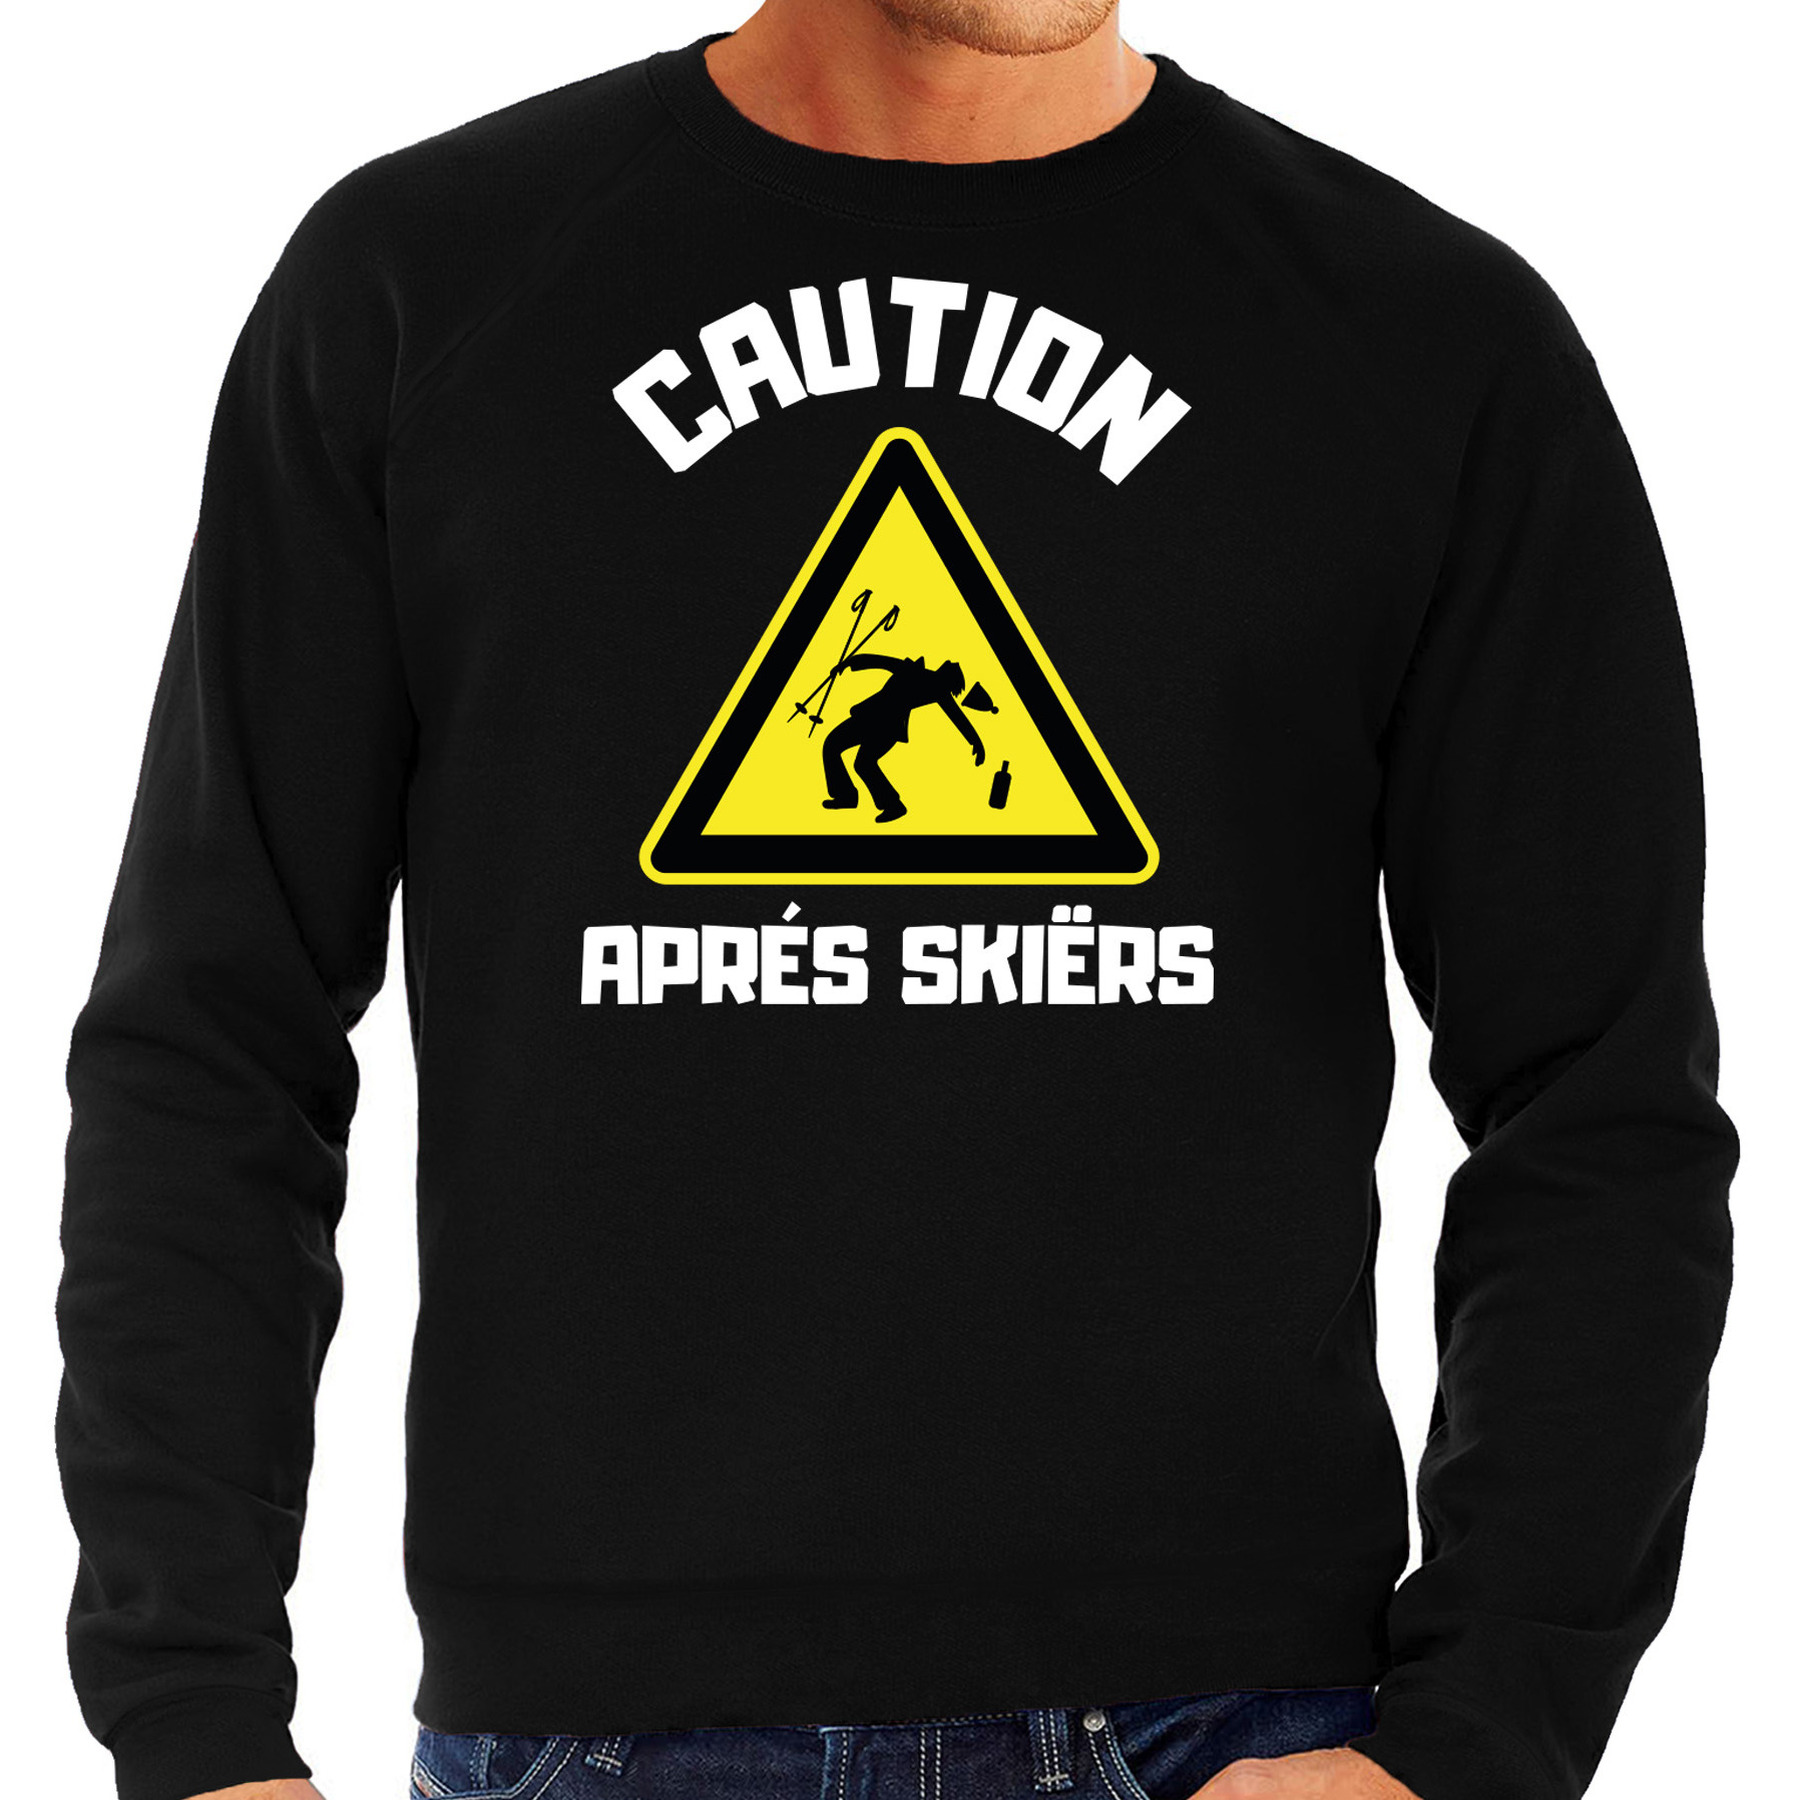 Apres ski sweater voor heren - apres ski waarschuwing - zwart - winter trui